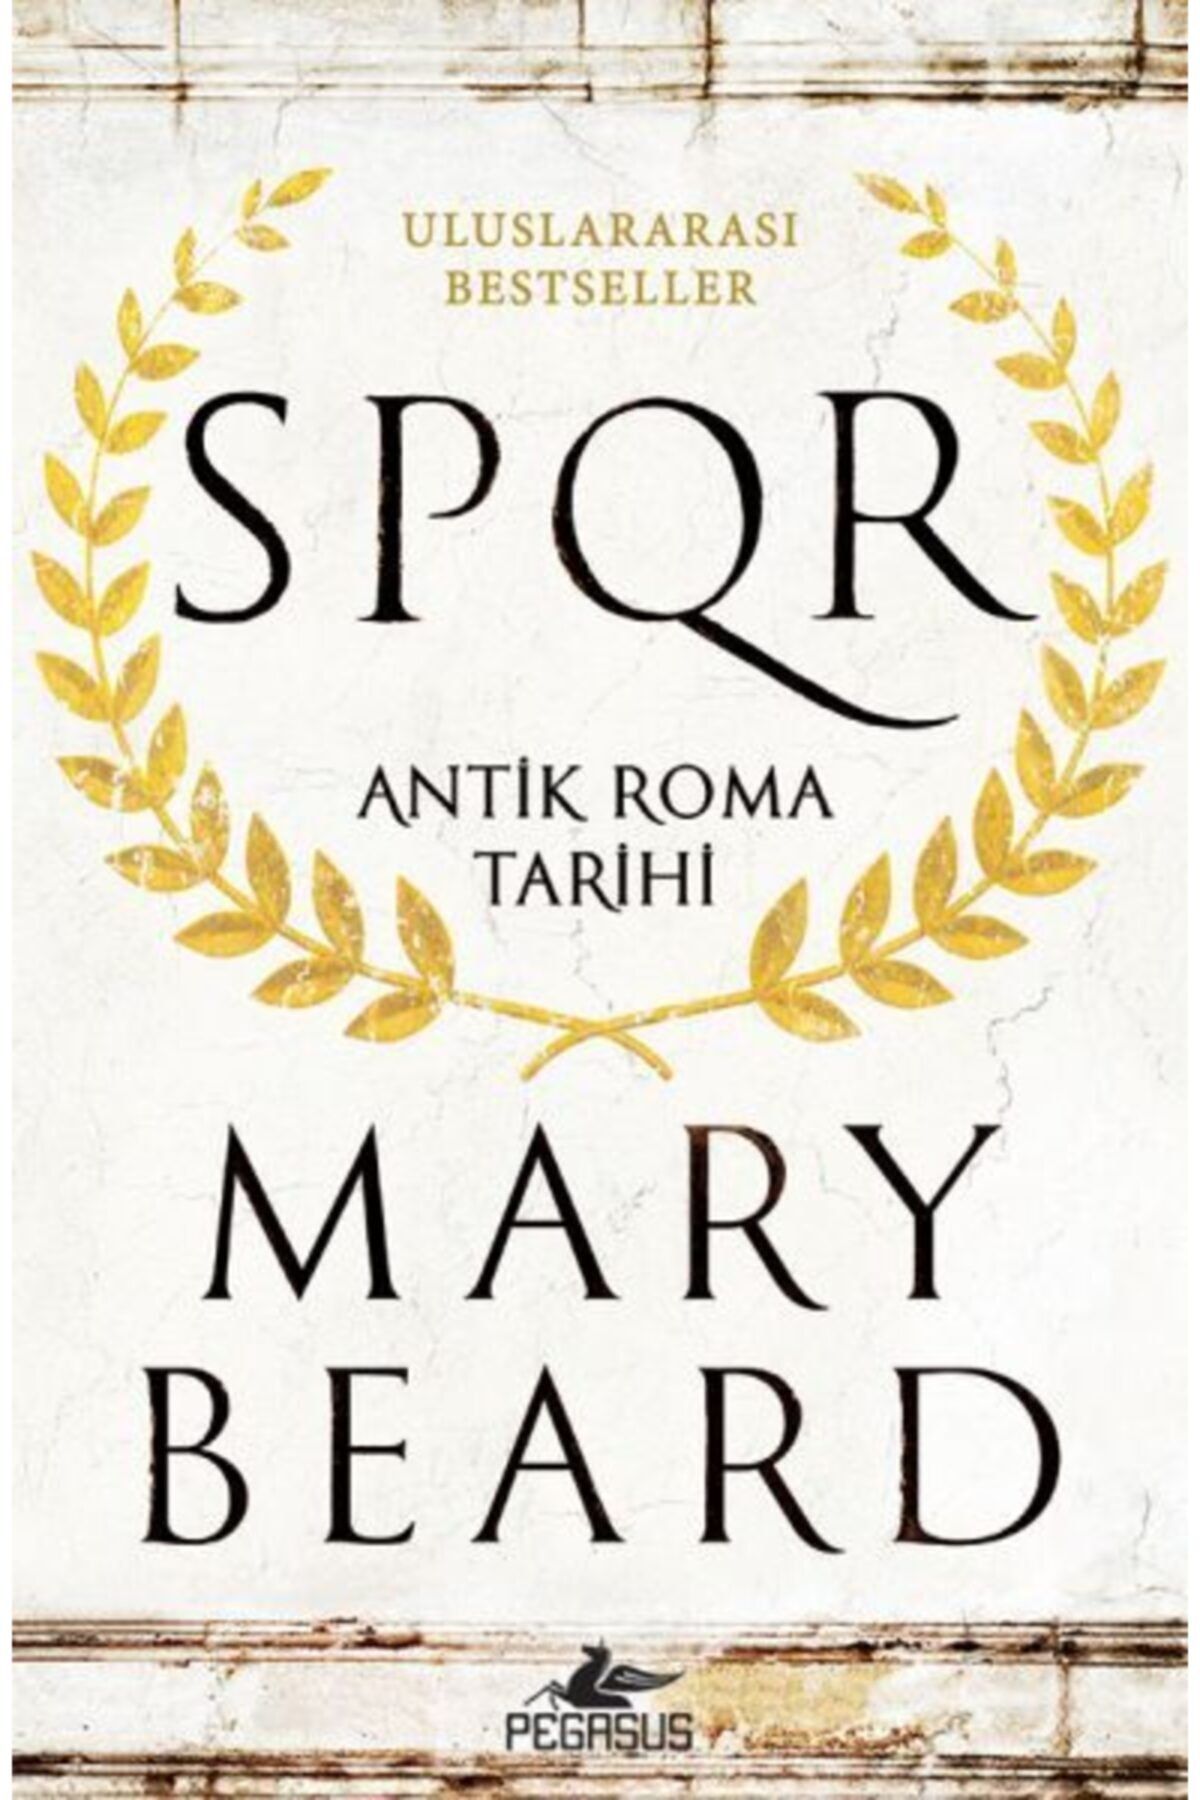 Pegasus Yayınları Spqr: Antik Roma Tarihi - Mary Beard